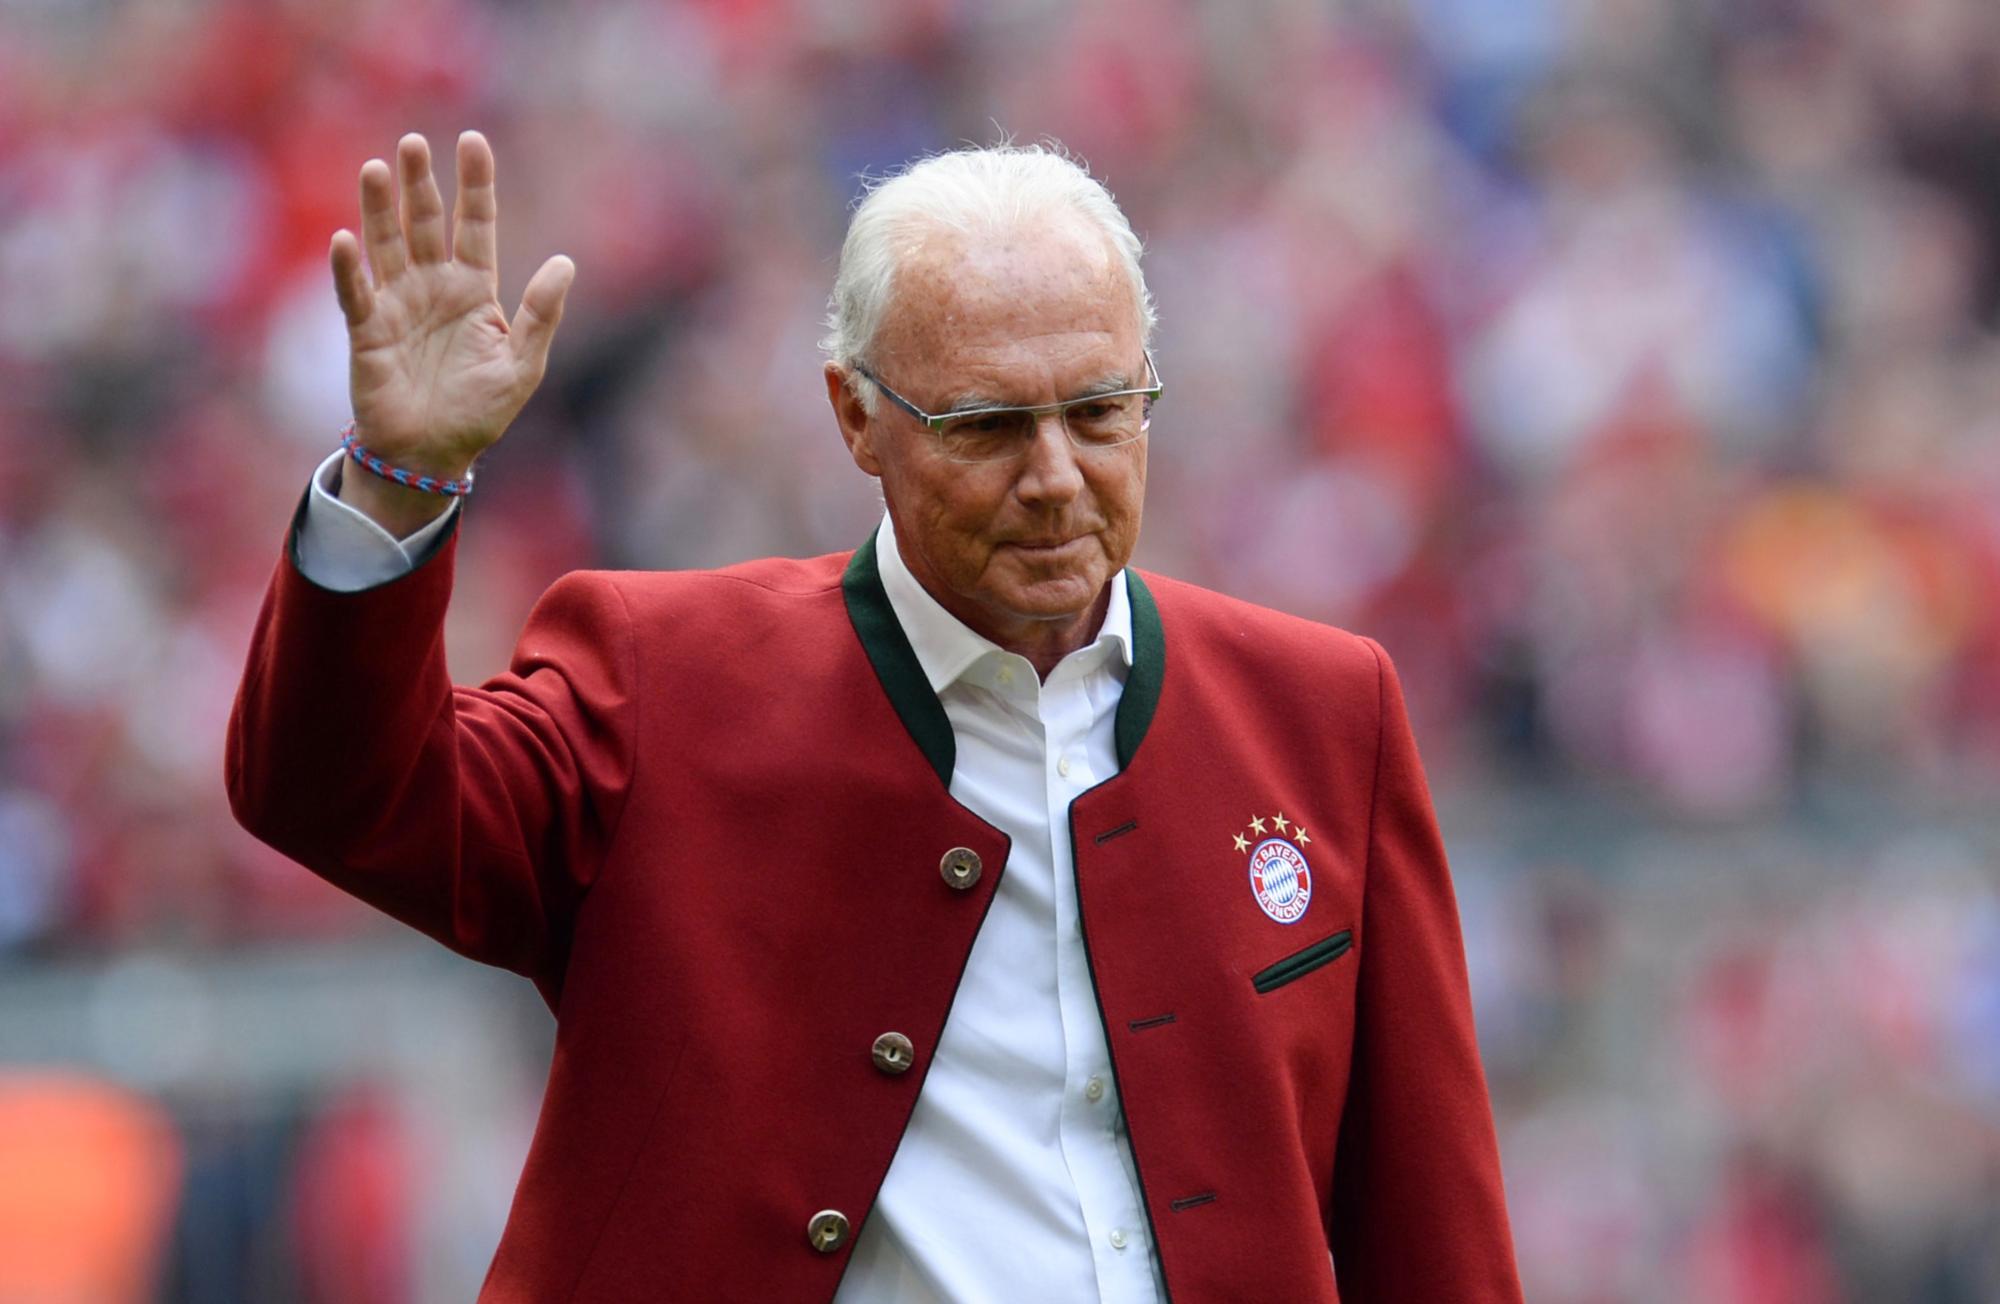 Der Kaiser ist tot: Fußball-Legende Franz Beckenbauer gestorben